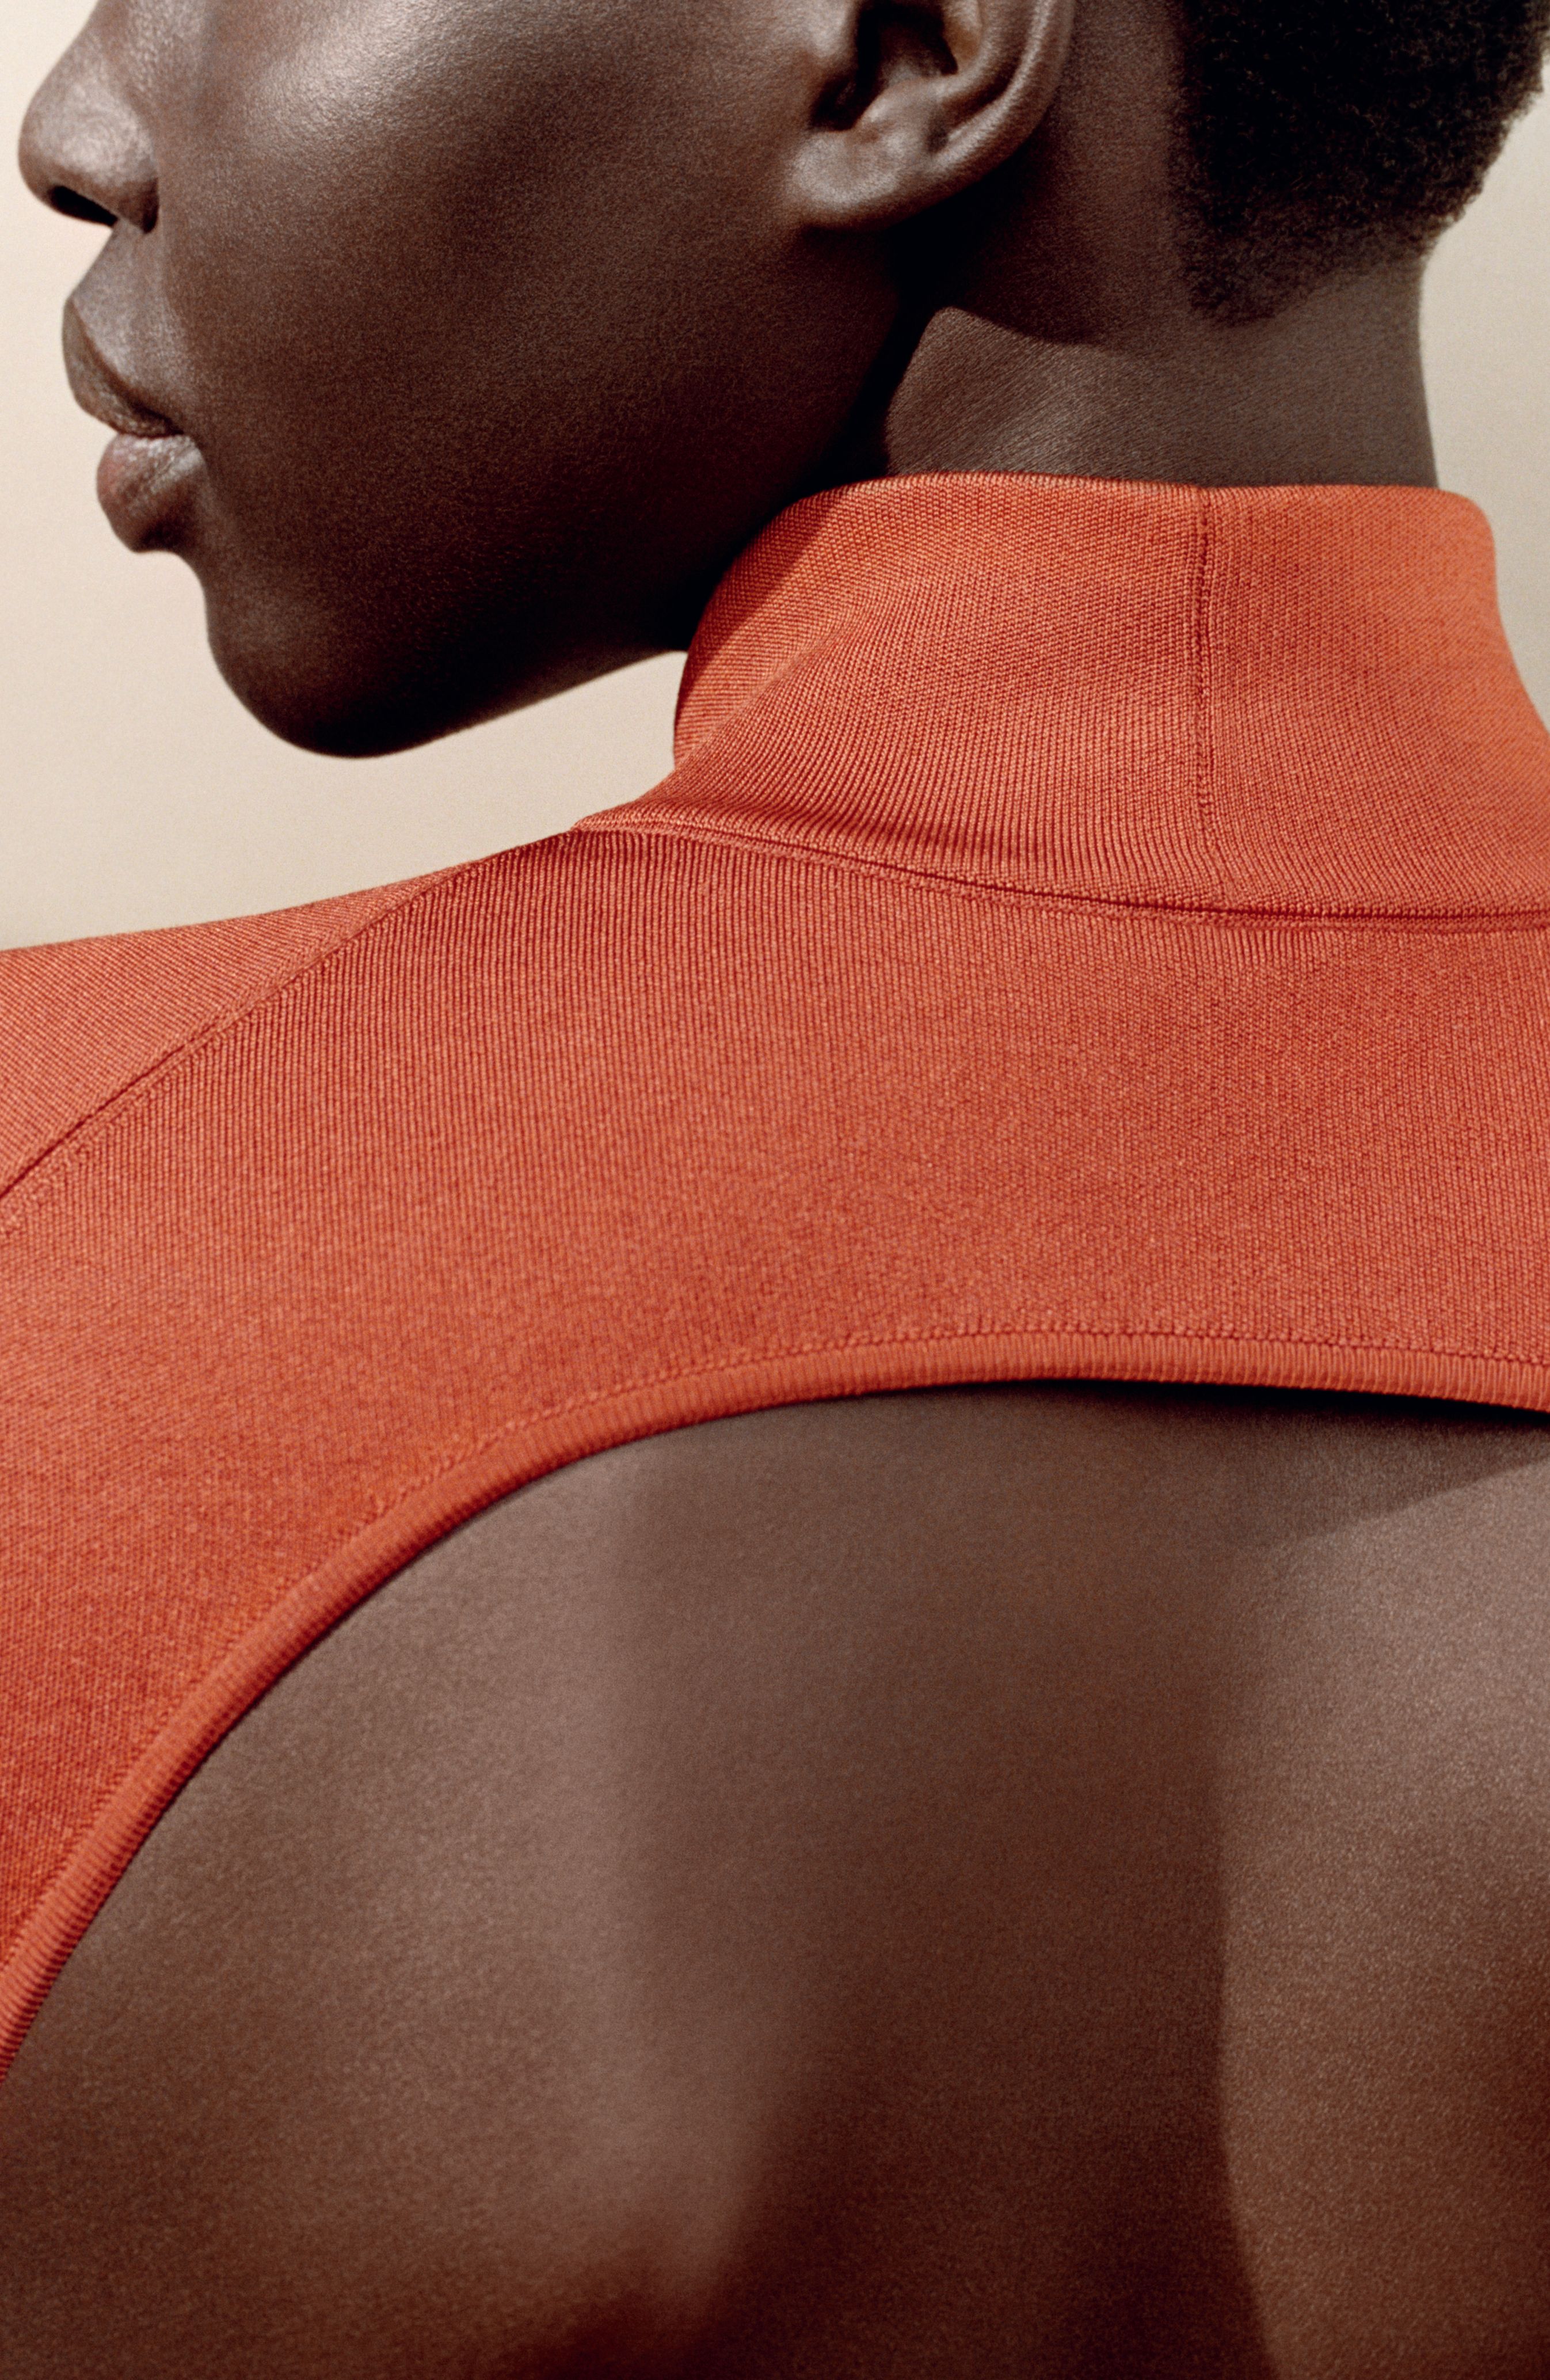 Ra mắt bộ mỹ phẩm cho làn da, Hermès tập trung vào ngành hàng làm đẹp - Ảnh 1